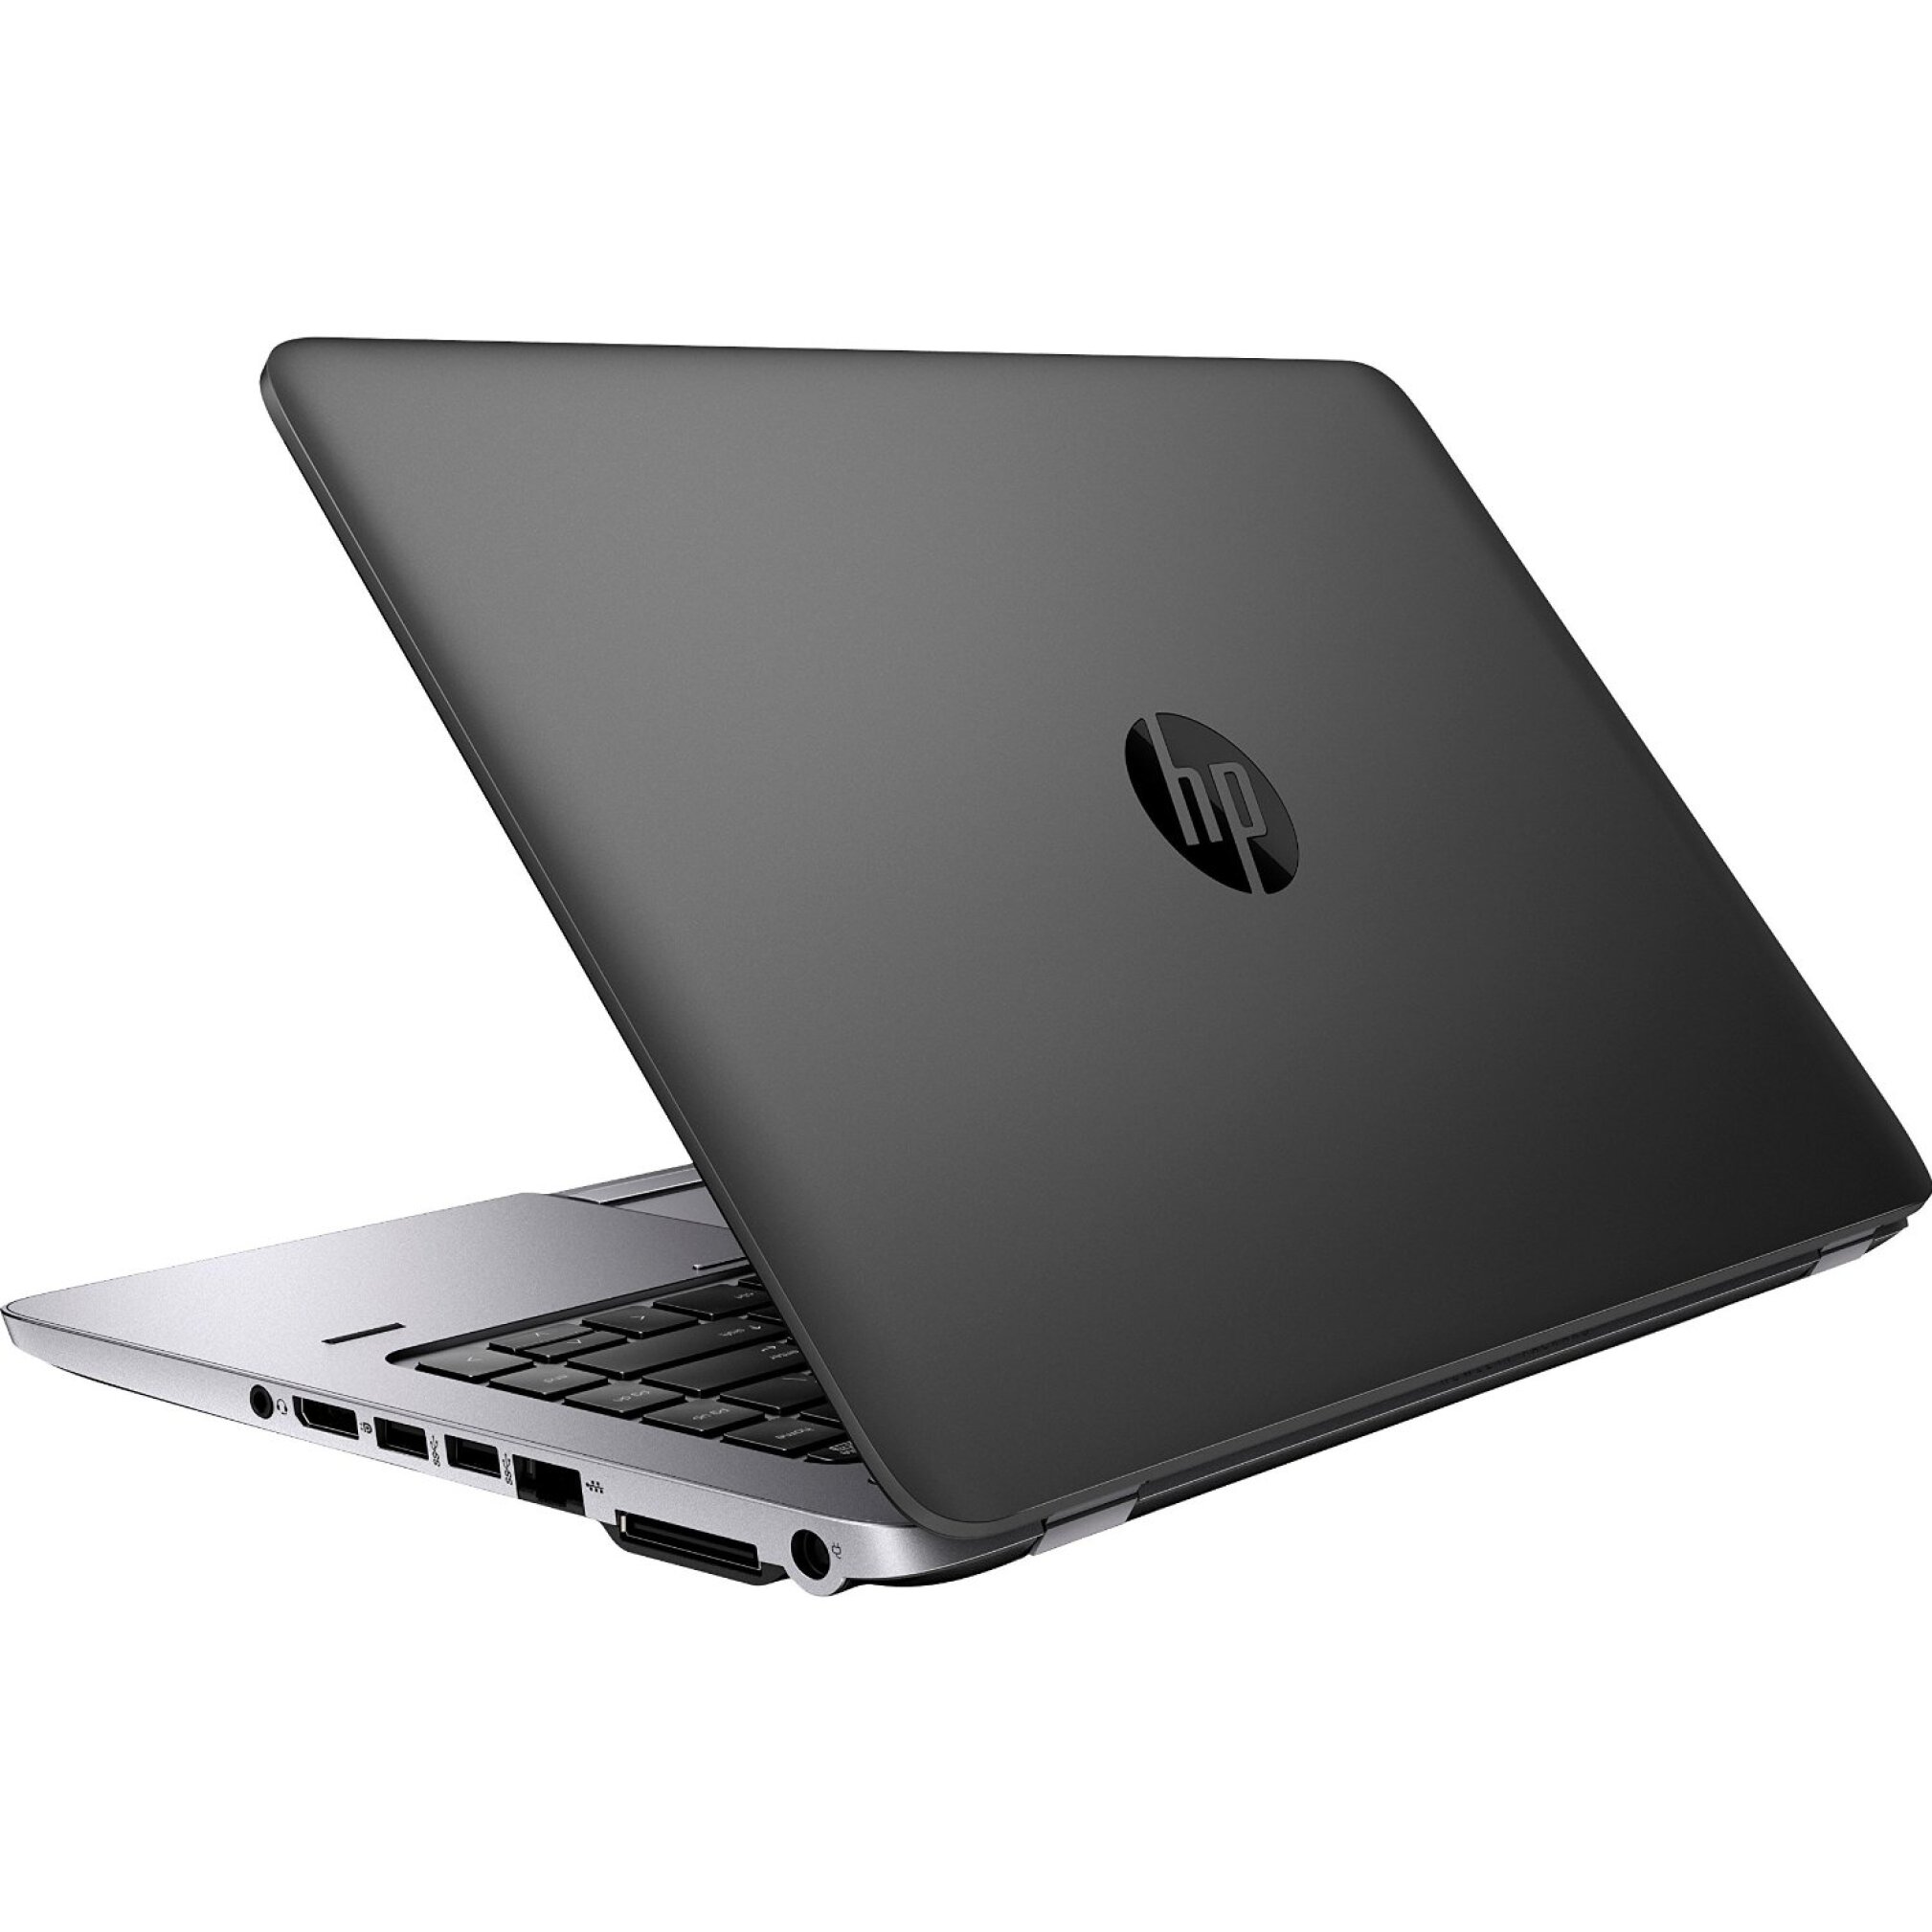  خرید لپ تاپ مقرون و به صرفه استوک اچ پی | Hp Elitebook 840 G1 با گرافیک مجزا | لاکچری لپ تاپ 